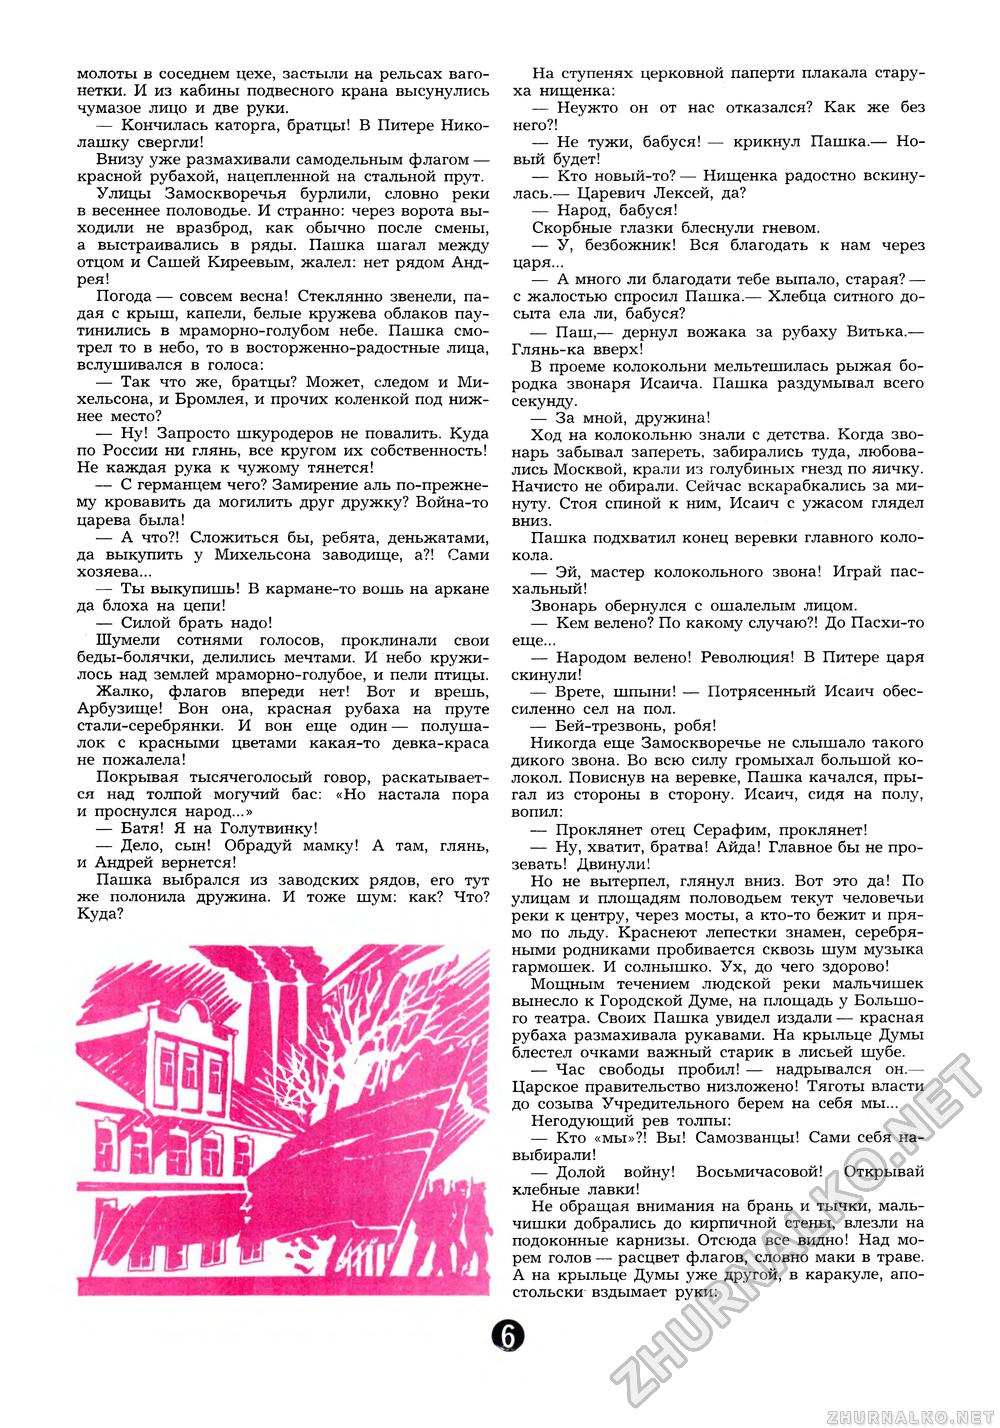 Пионер 1987-12, страница 8